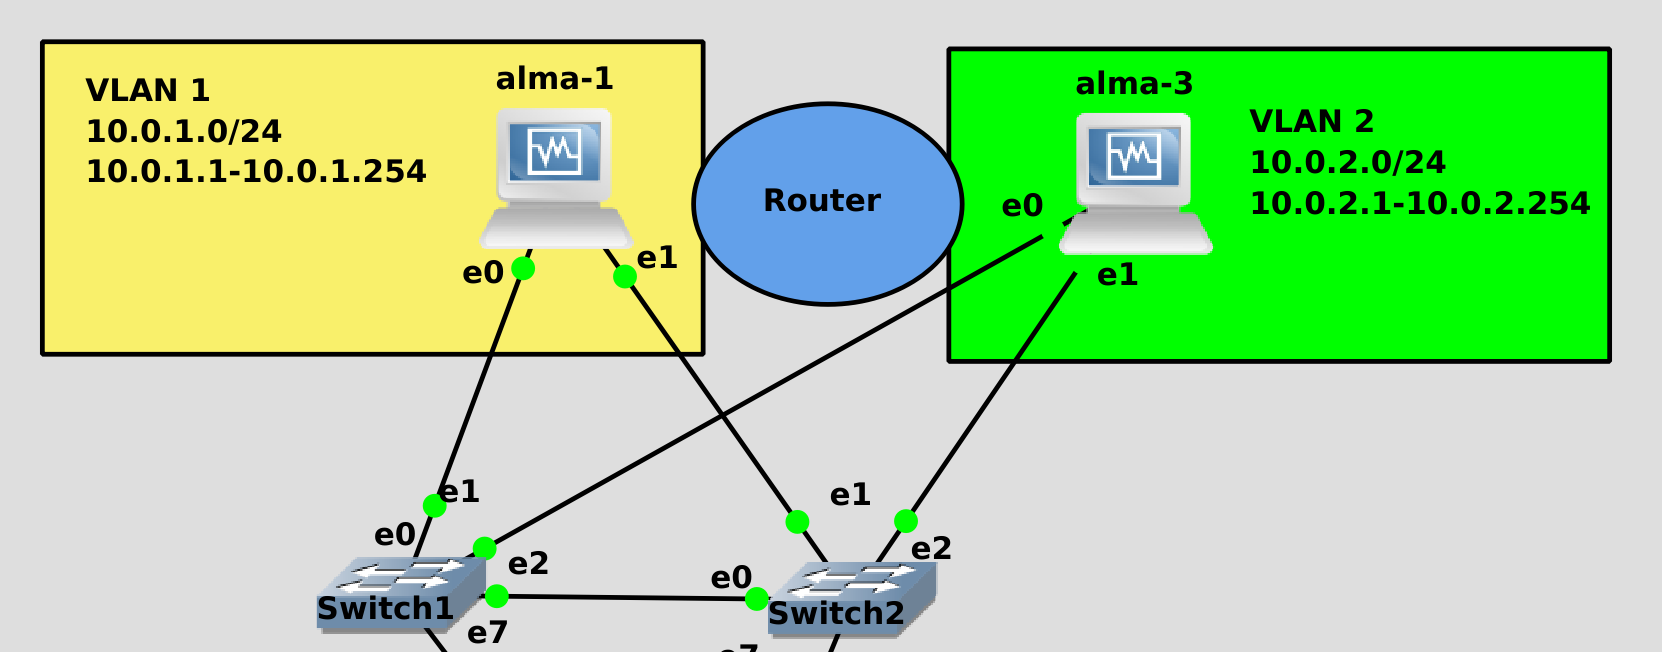 Разбить сеть. Как разделить сеть на подсети. Подсеть http://10.8.0.1/24. ПК С подсети 1.0 должны видеть подсети 2.0 и 3.0. Broadcast default GW маски подсети.